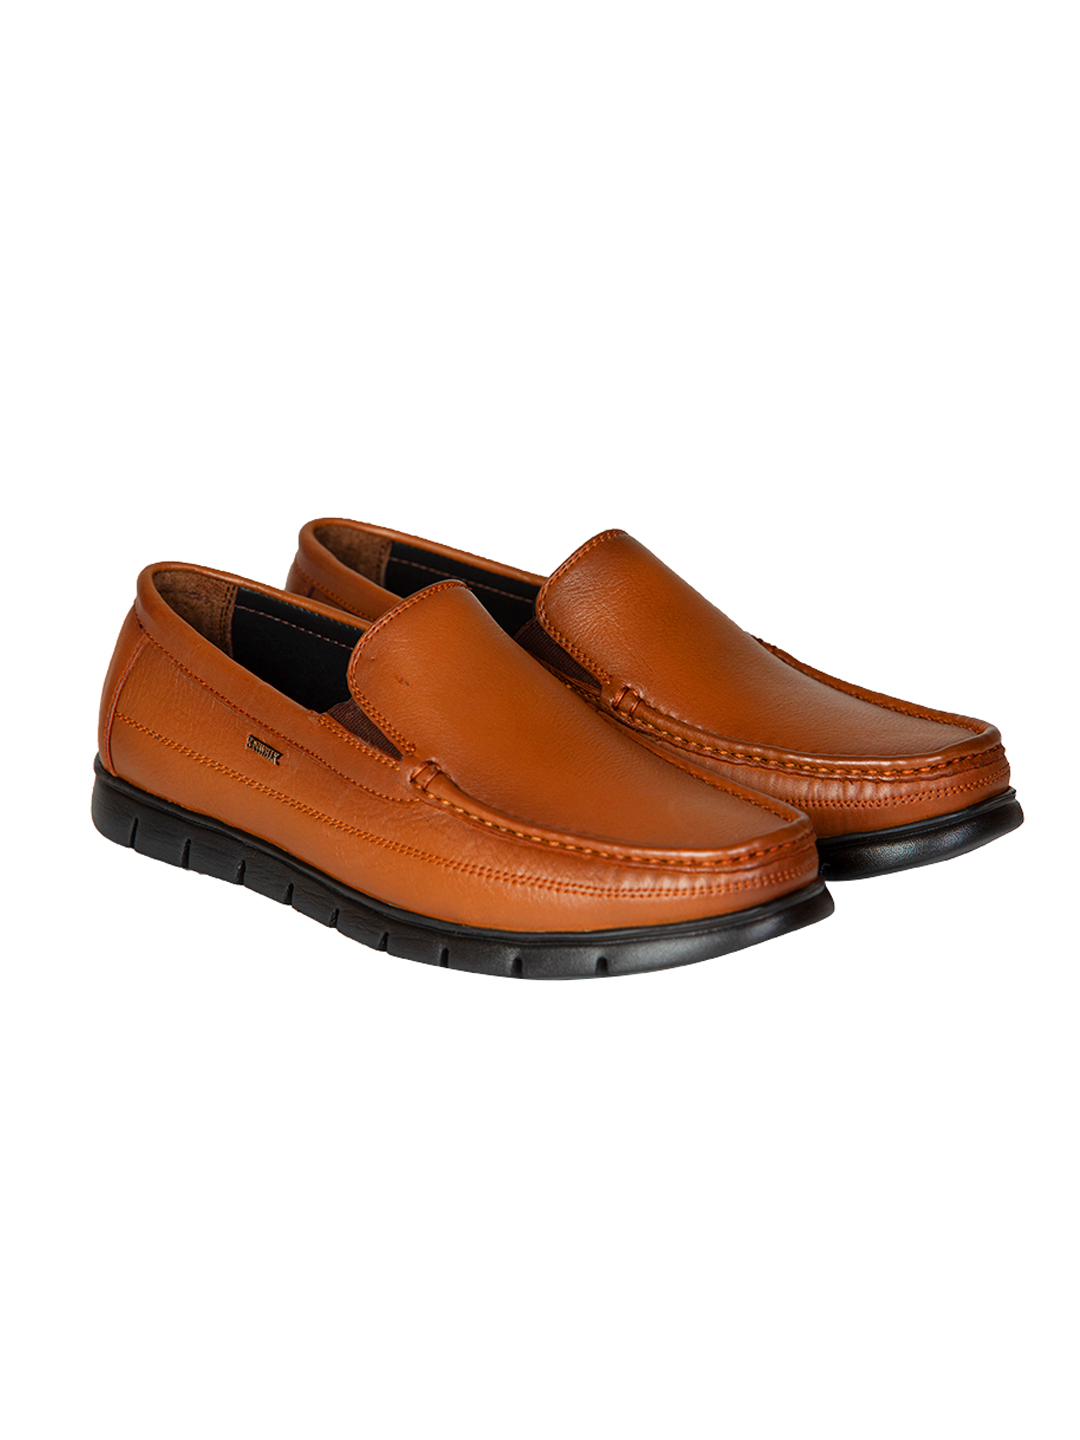 Buy Von Wellx Germany Comfort Tan Zion Shoes Online in Surat